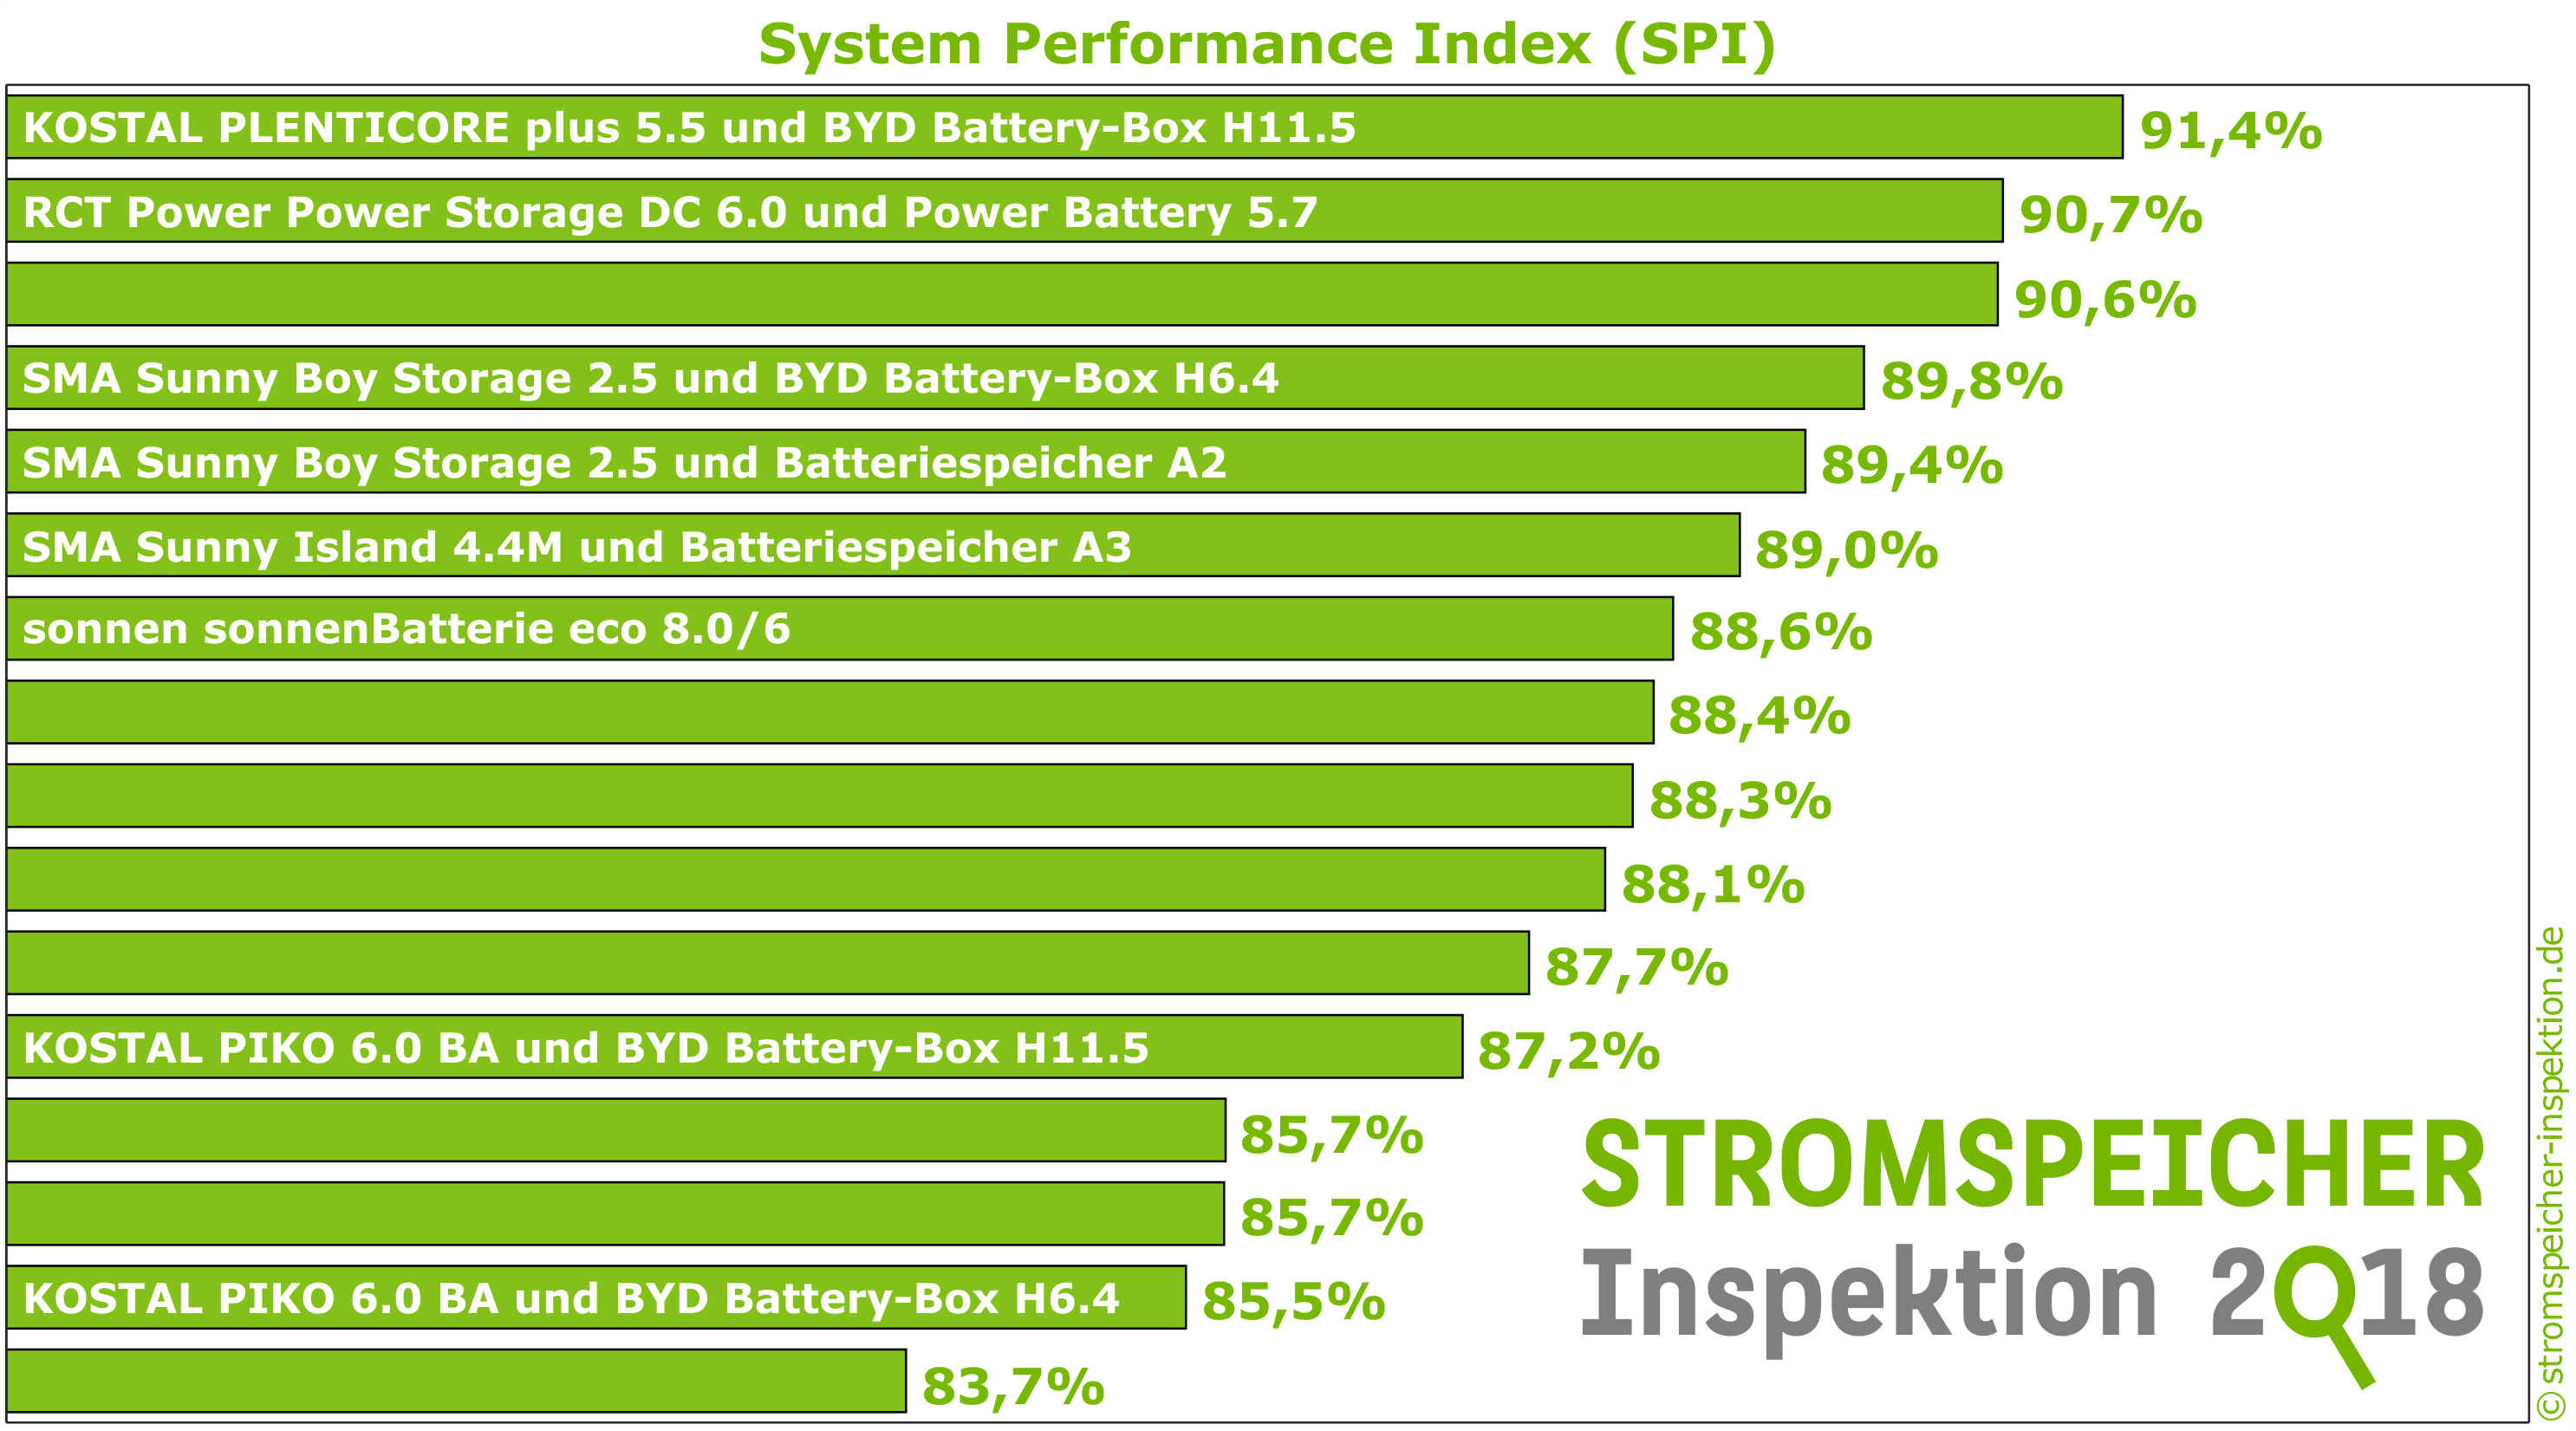 Stromspeicher Inspektion 2018 - System Performance Index